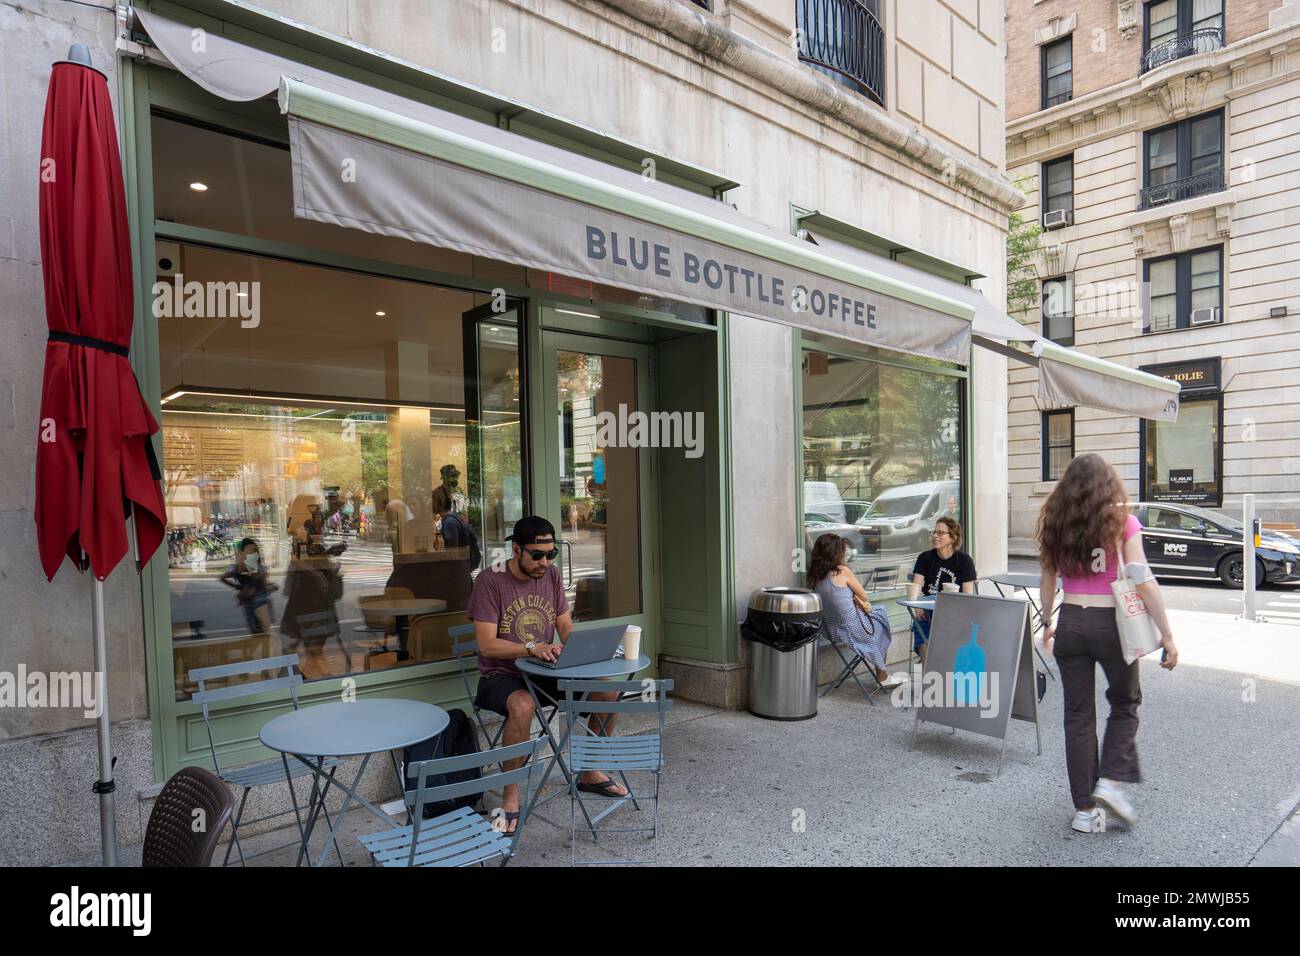 Vue extérieure d'un café-restaurant Blue Bottle dans l'Upper West Side de Manhattan, New York, vu vendredi, 8 juillet 2022. Banque D'Images